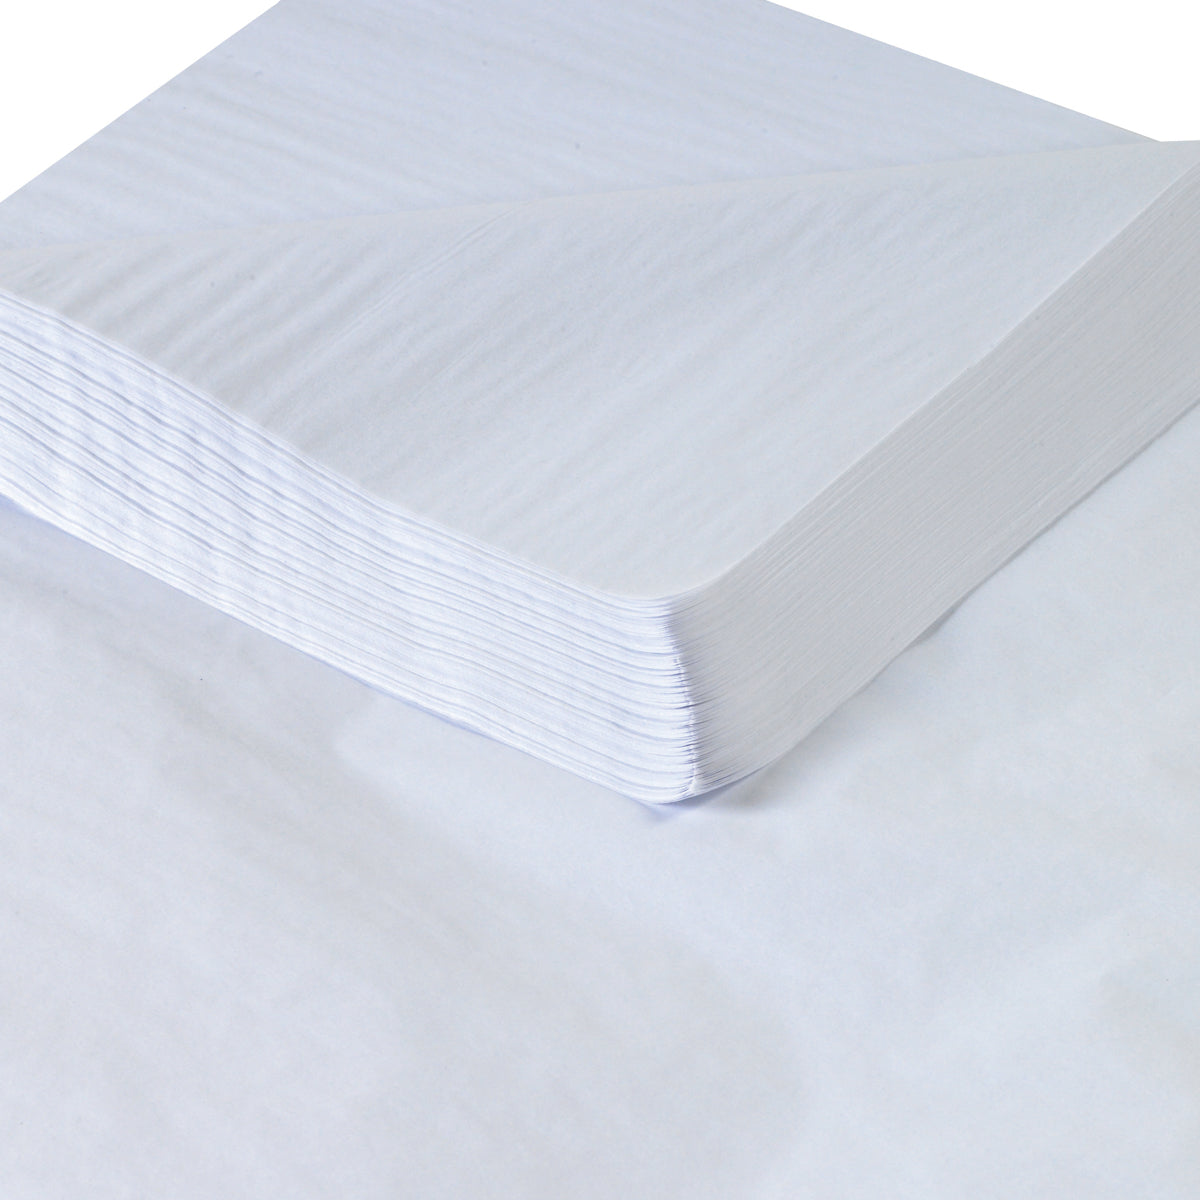 15 x 20 White Tissue Wrap 960/Case